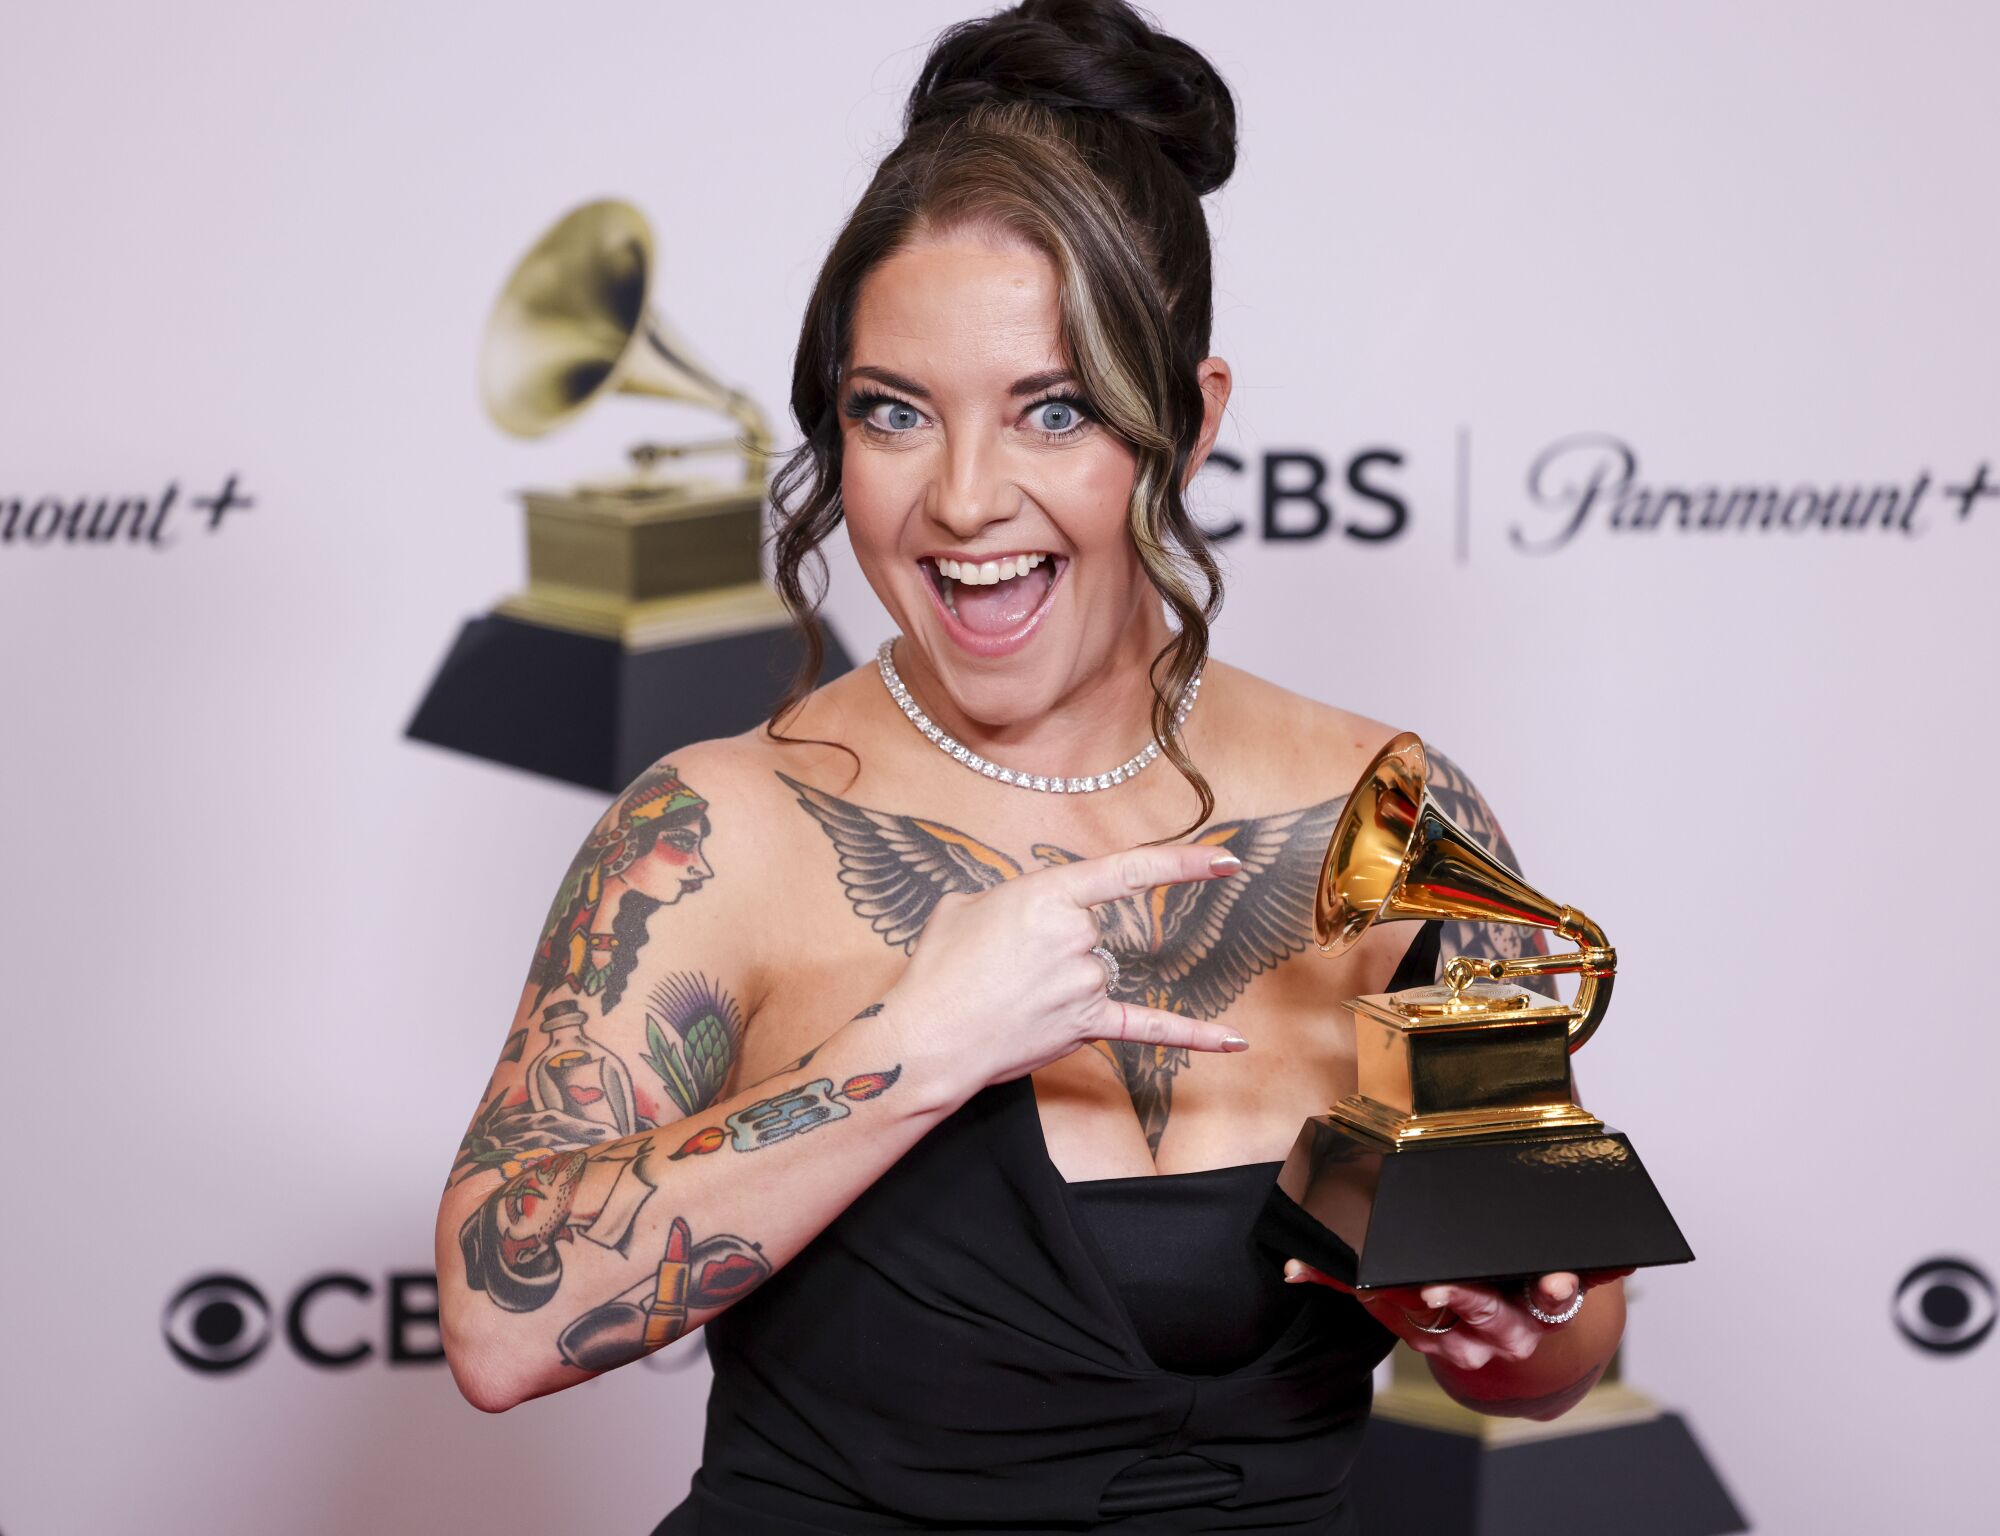 Ashley McBryde Gagnant du 65e Grammy Awards qui s'est tenu à la Crytpo.com Arena.